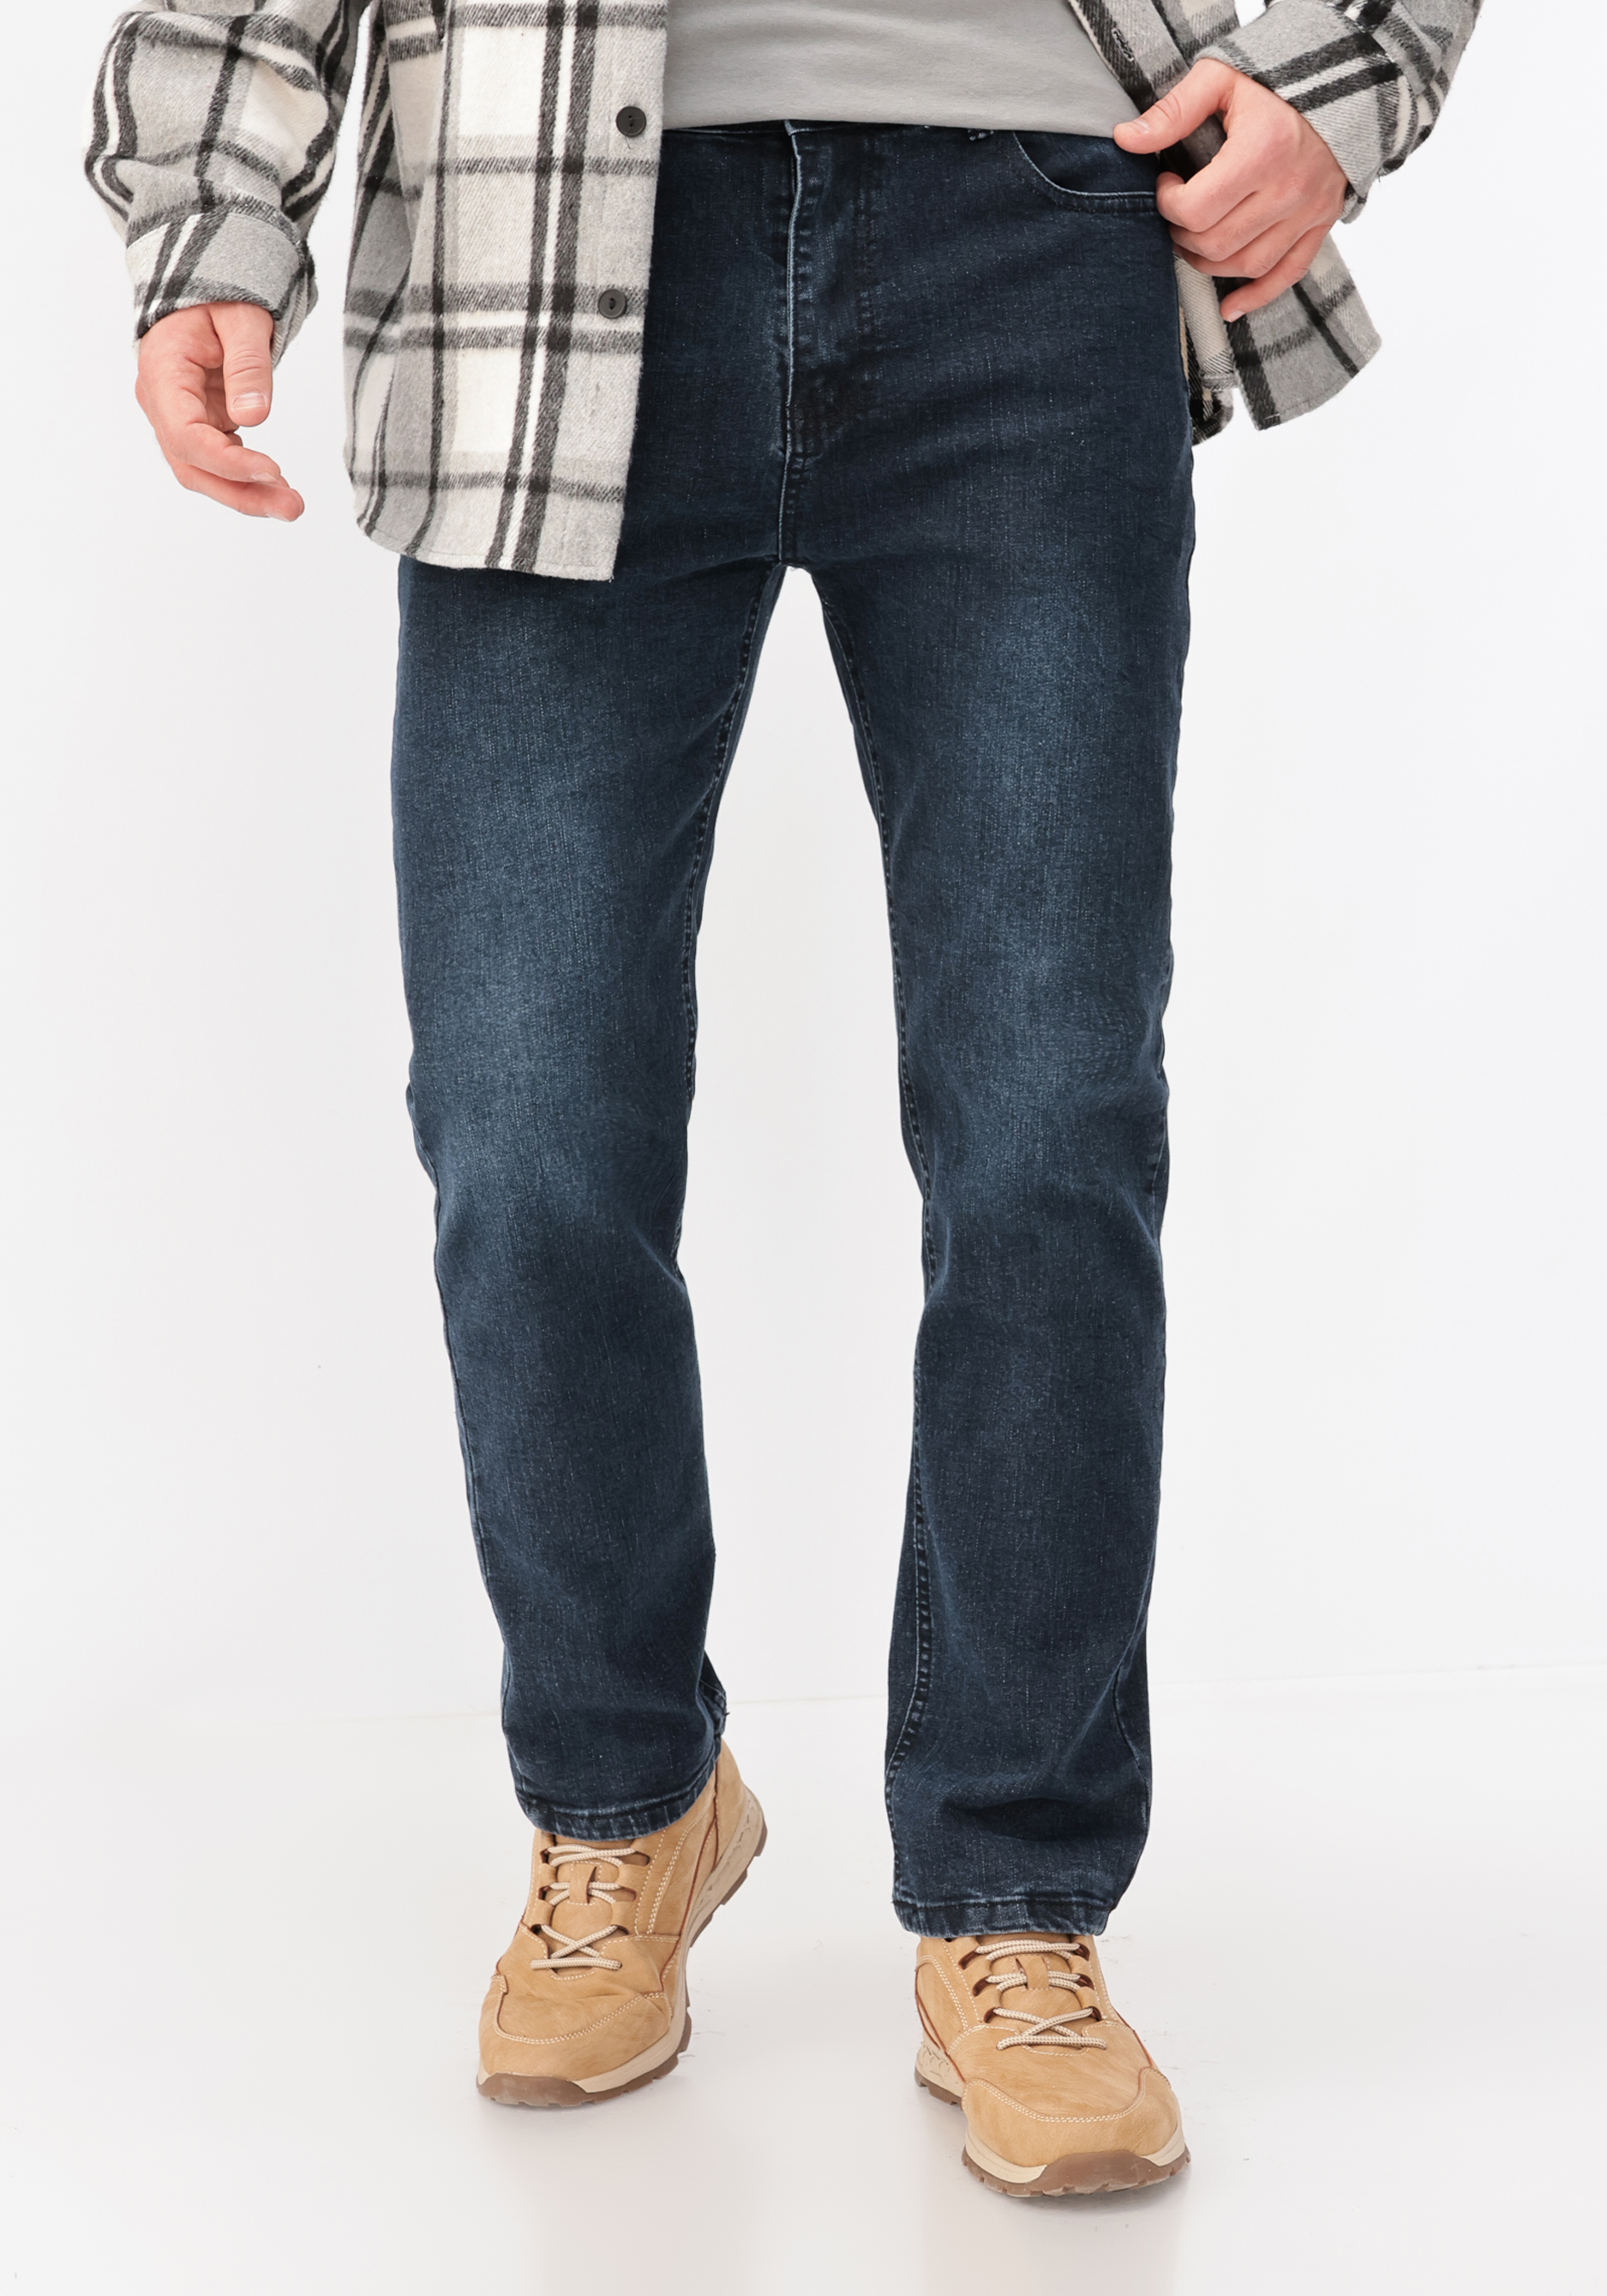 Джинсы классические мужские джинсы zolla классические 42 размер